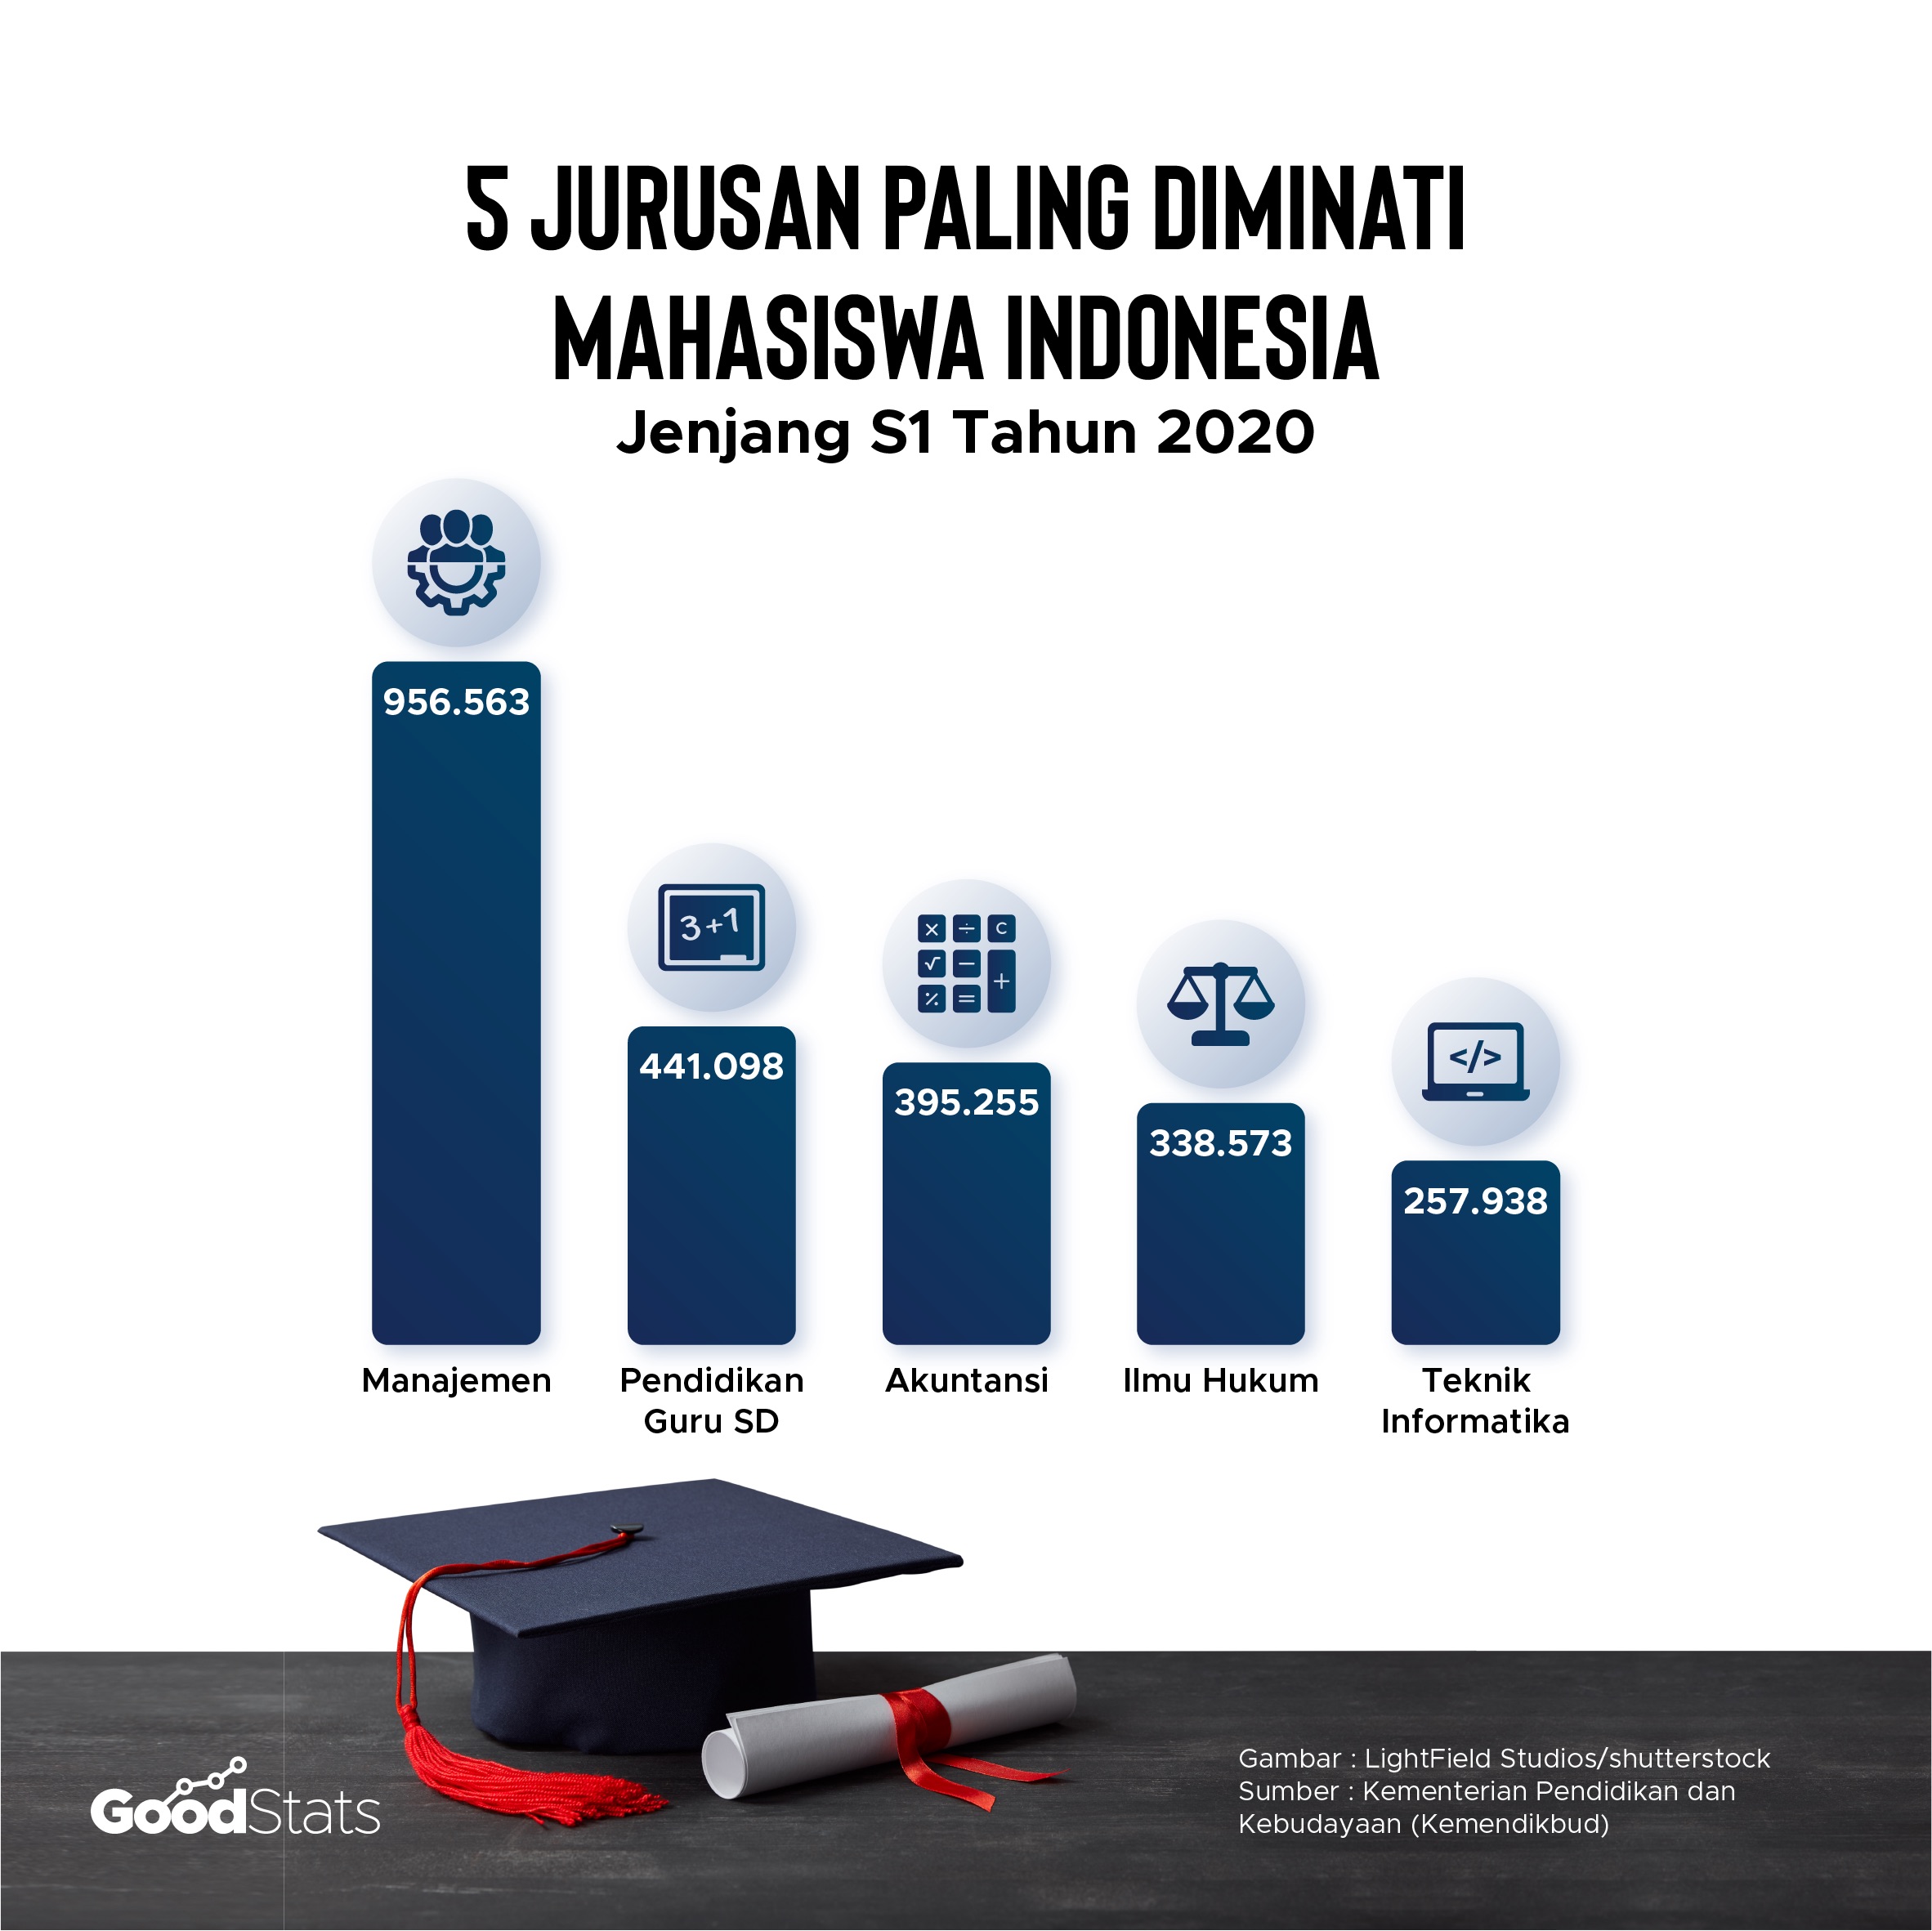 5 jurusan paling diminati di Indonesia sepanjang 2020 | GoodStats